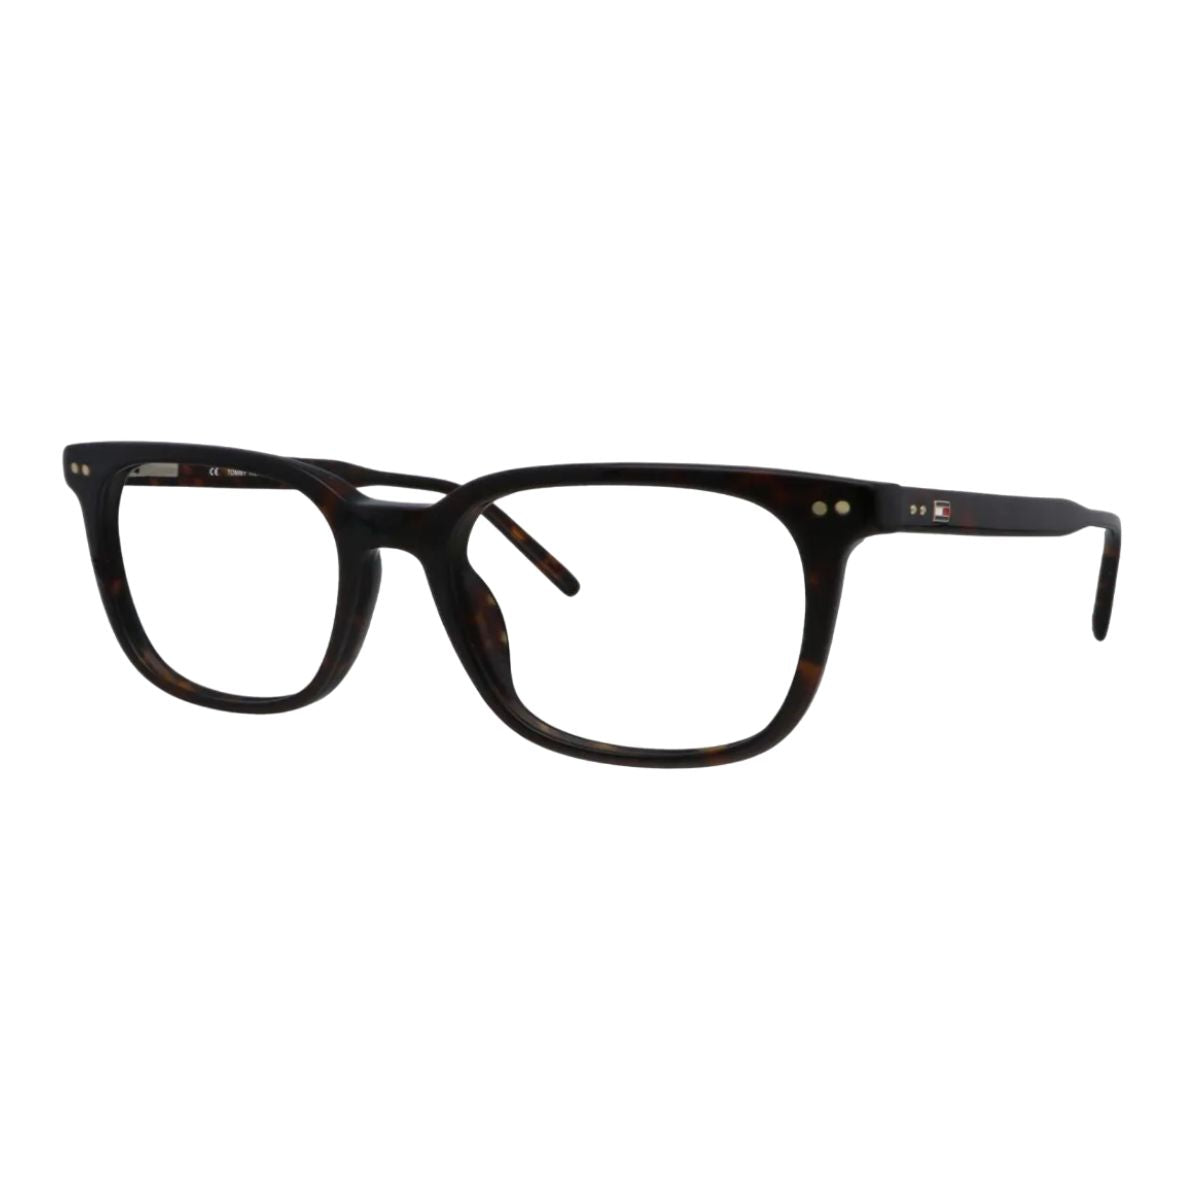 "Tommy Hilfiger 3183 C2 men's eyeglasses frame online at optorium"